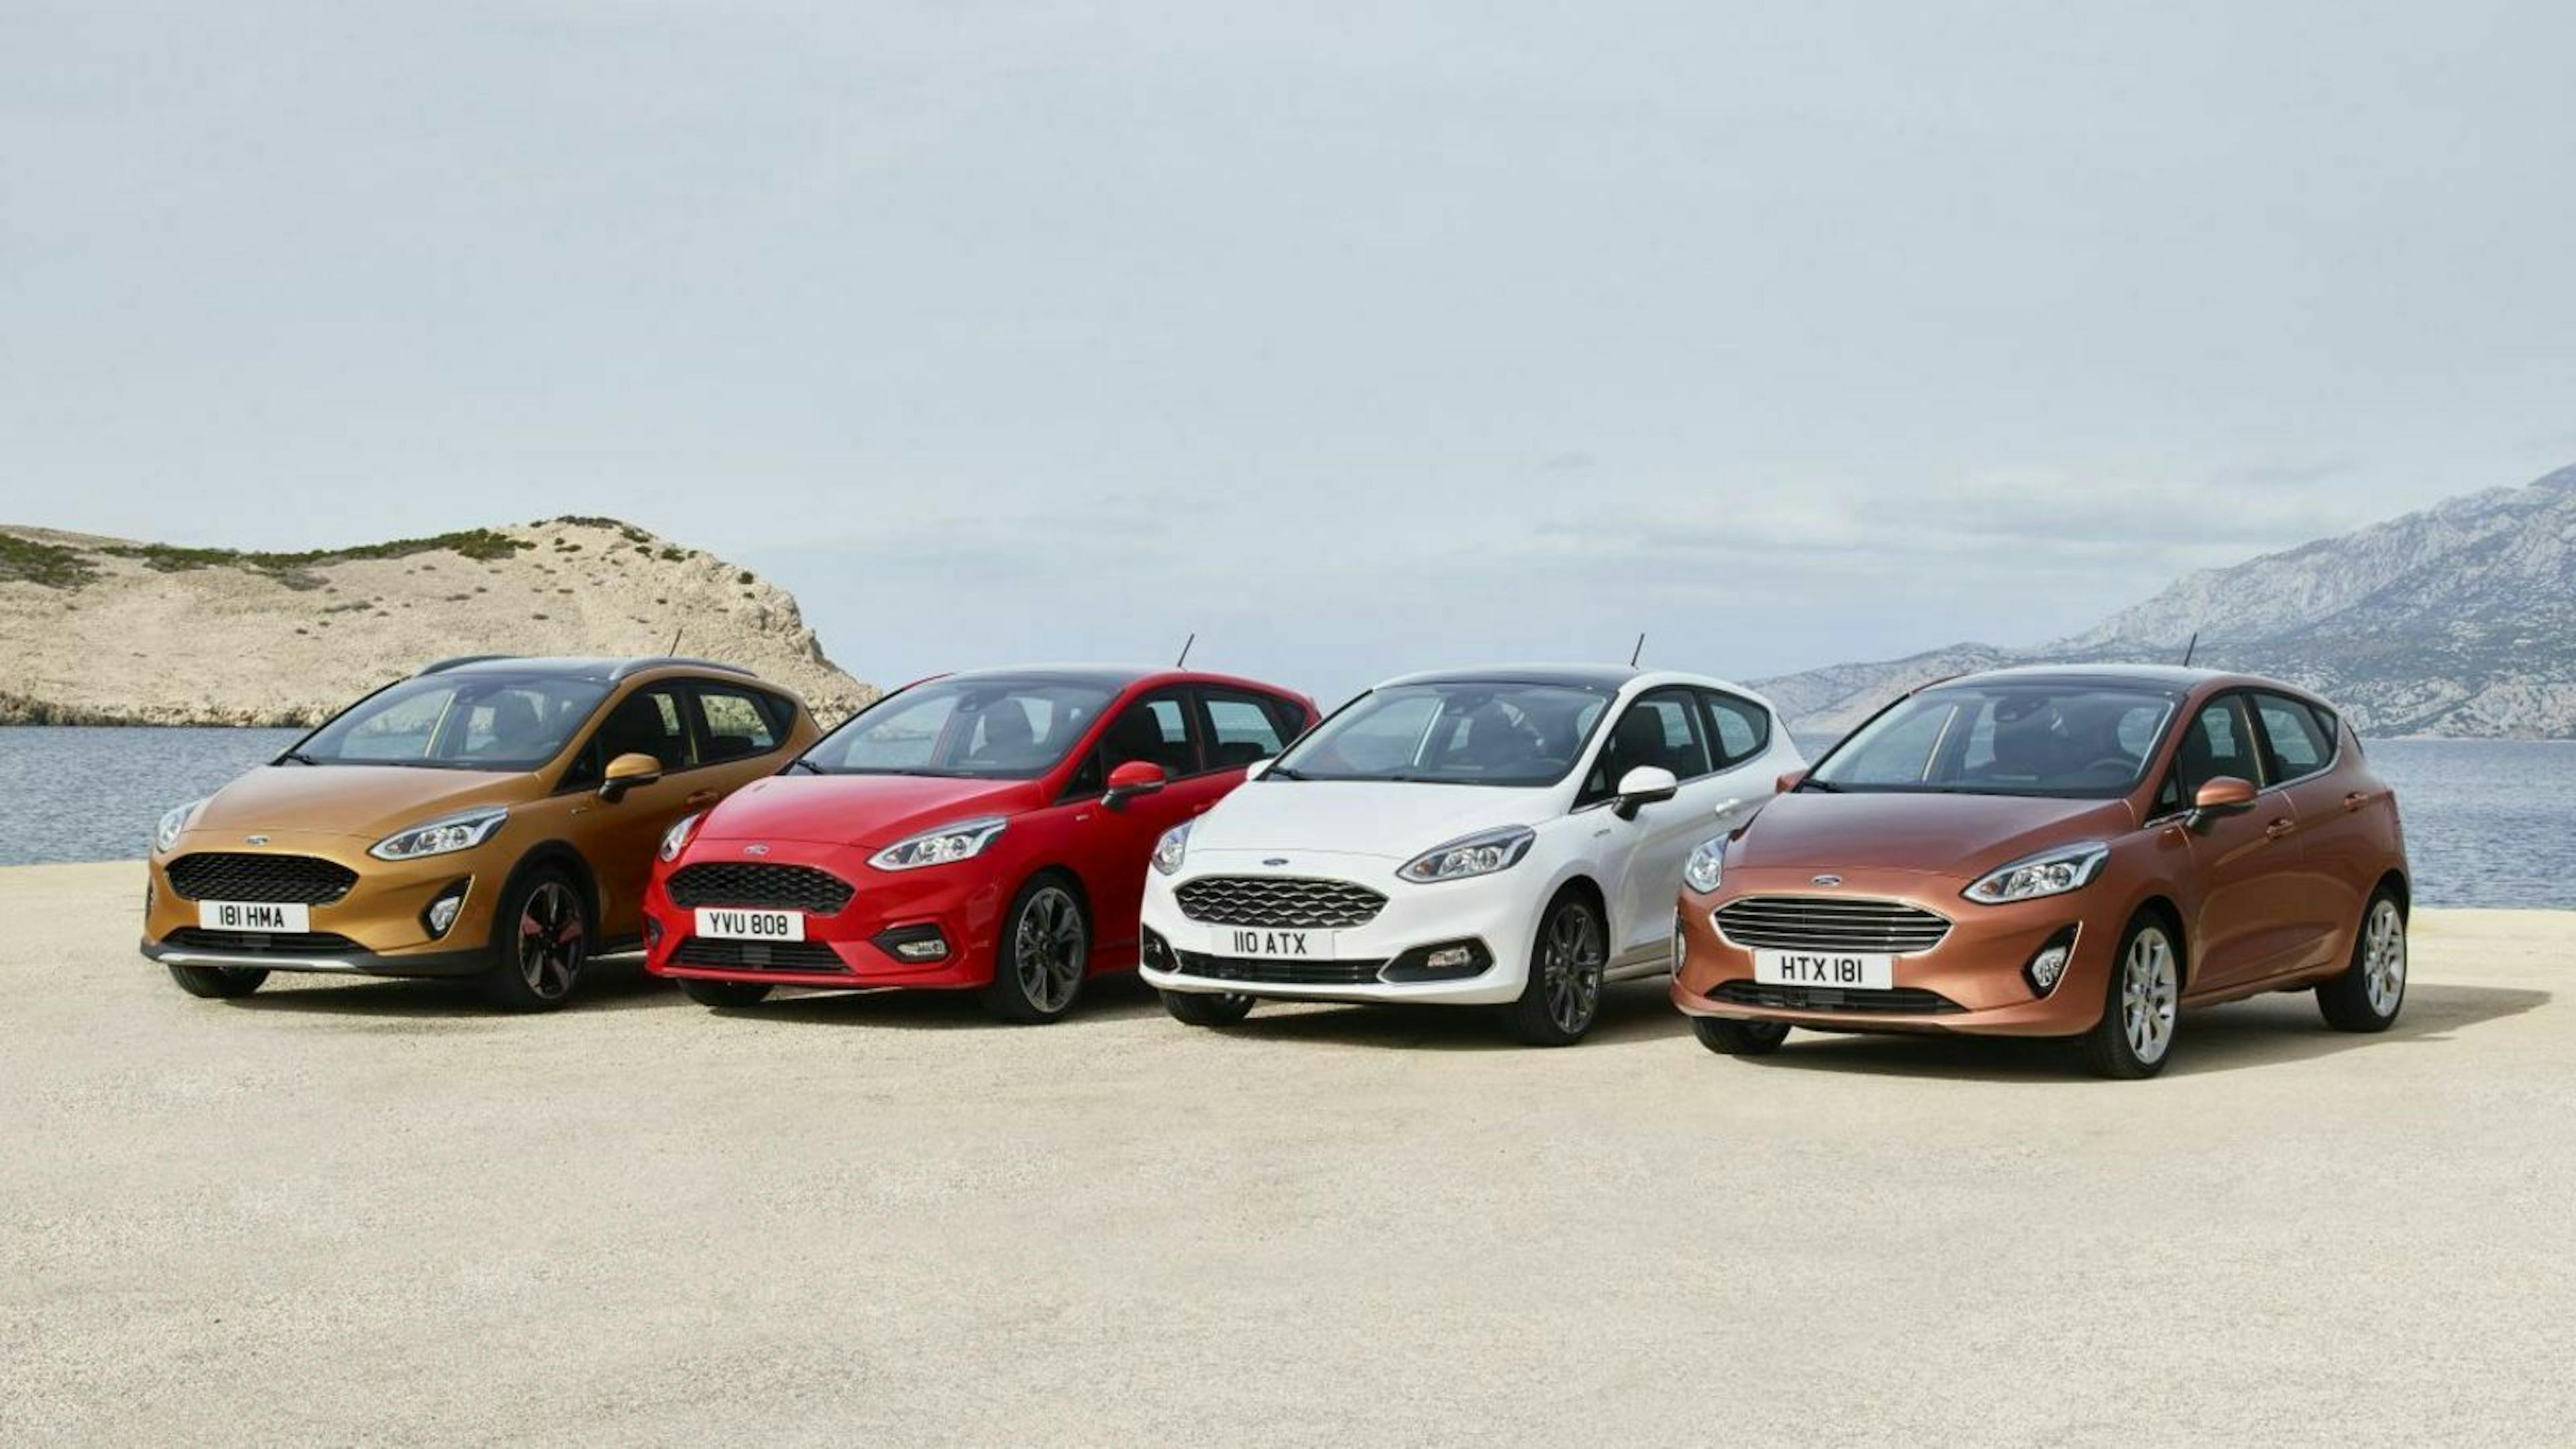 Ford Fiesta 2017 verschiedene Farben aufgereiht